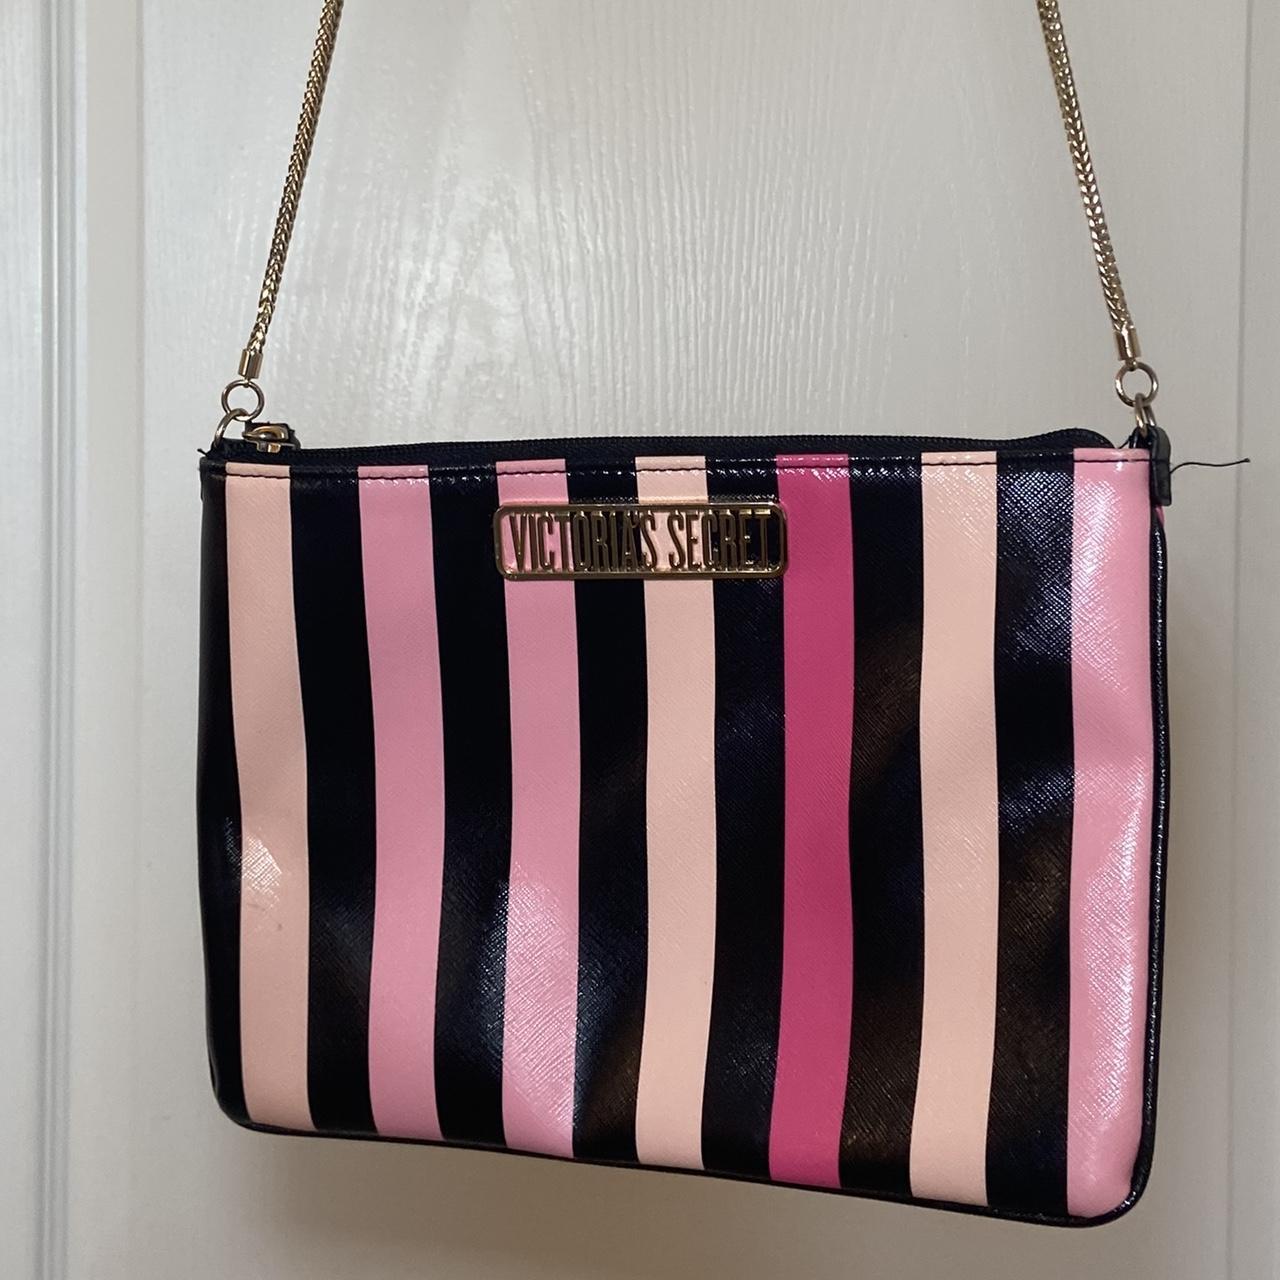 striped victoria secret makeup bag